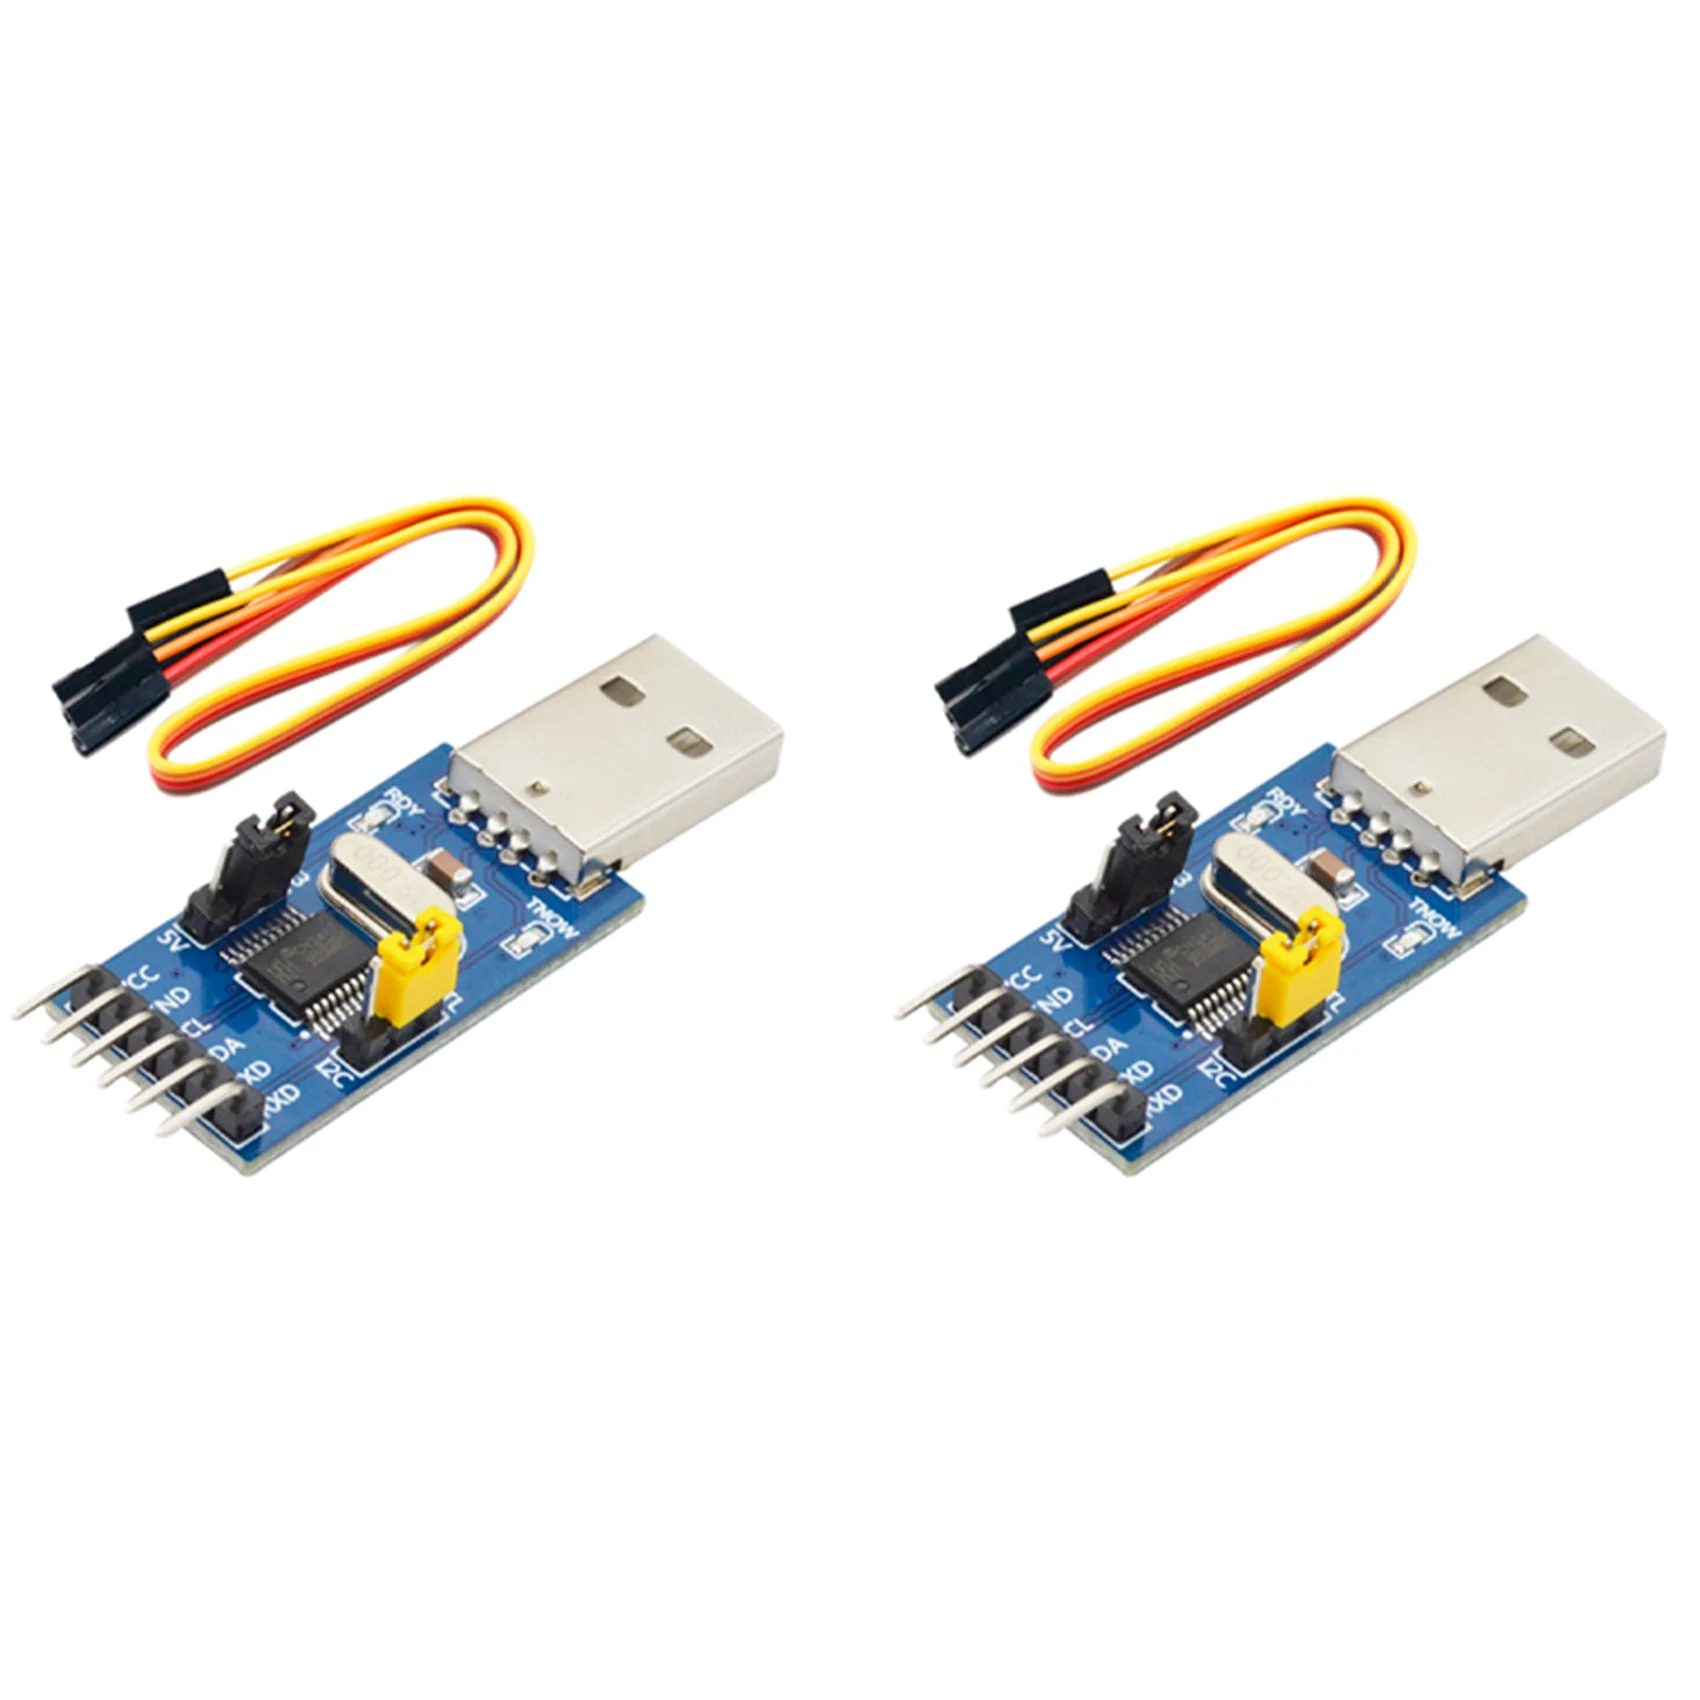 

2X CH341T Two-In-One Module USB to I2C IIC UART USB to TTL Single-Chip Serial Port Downloader